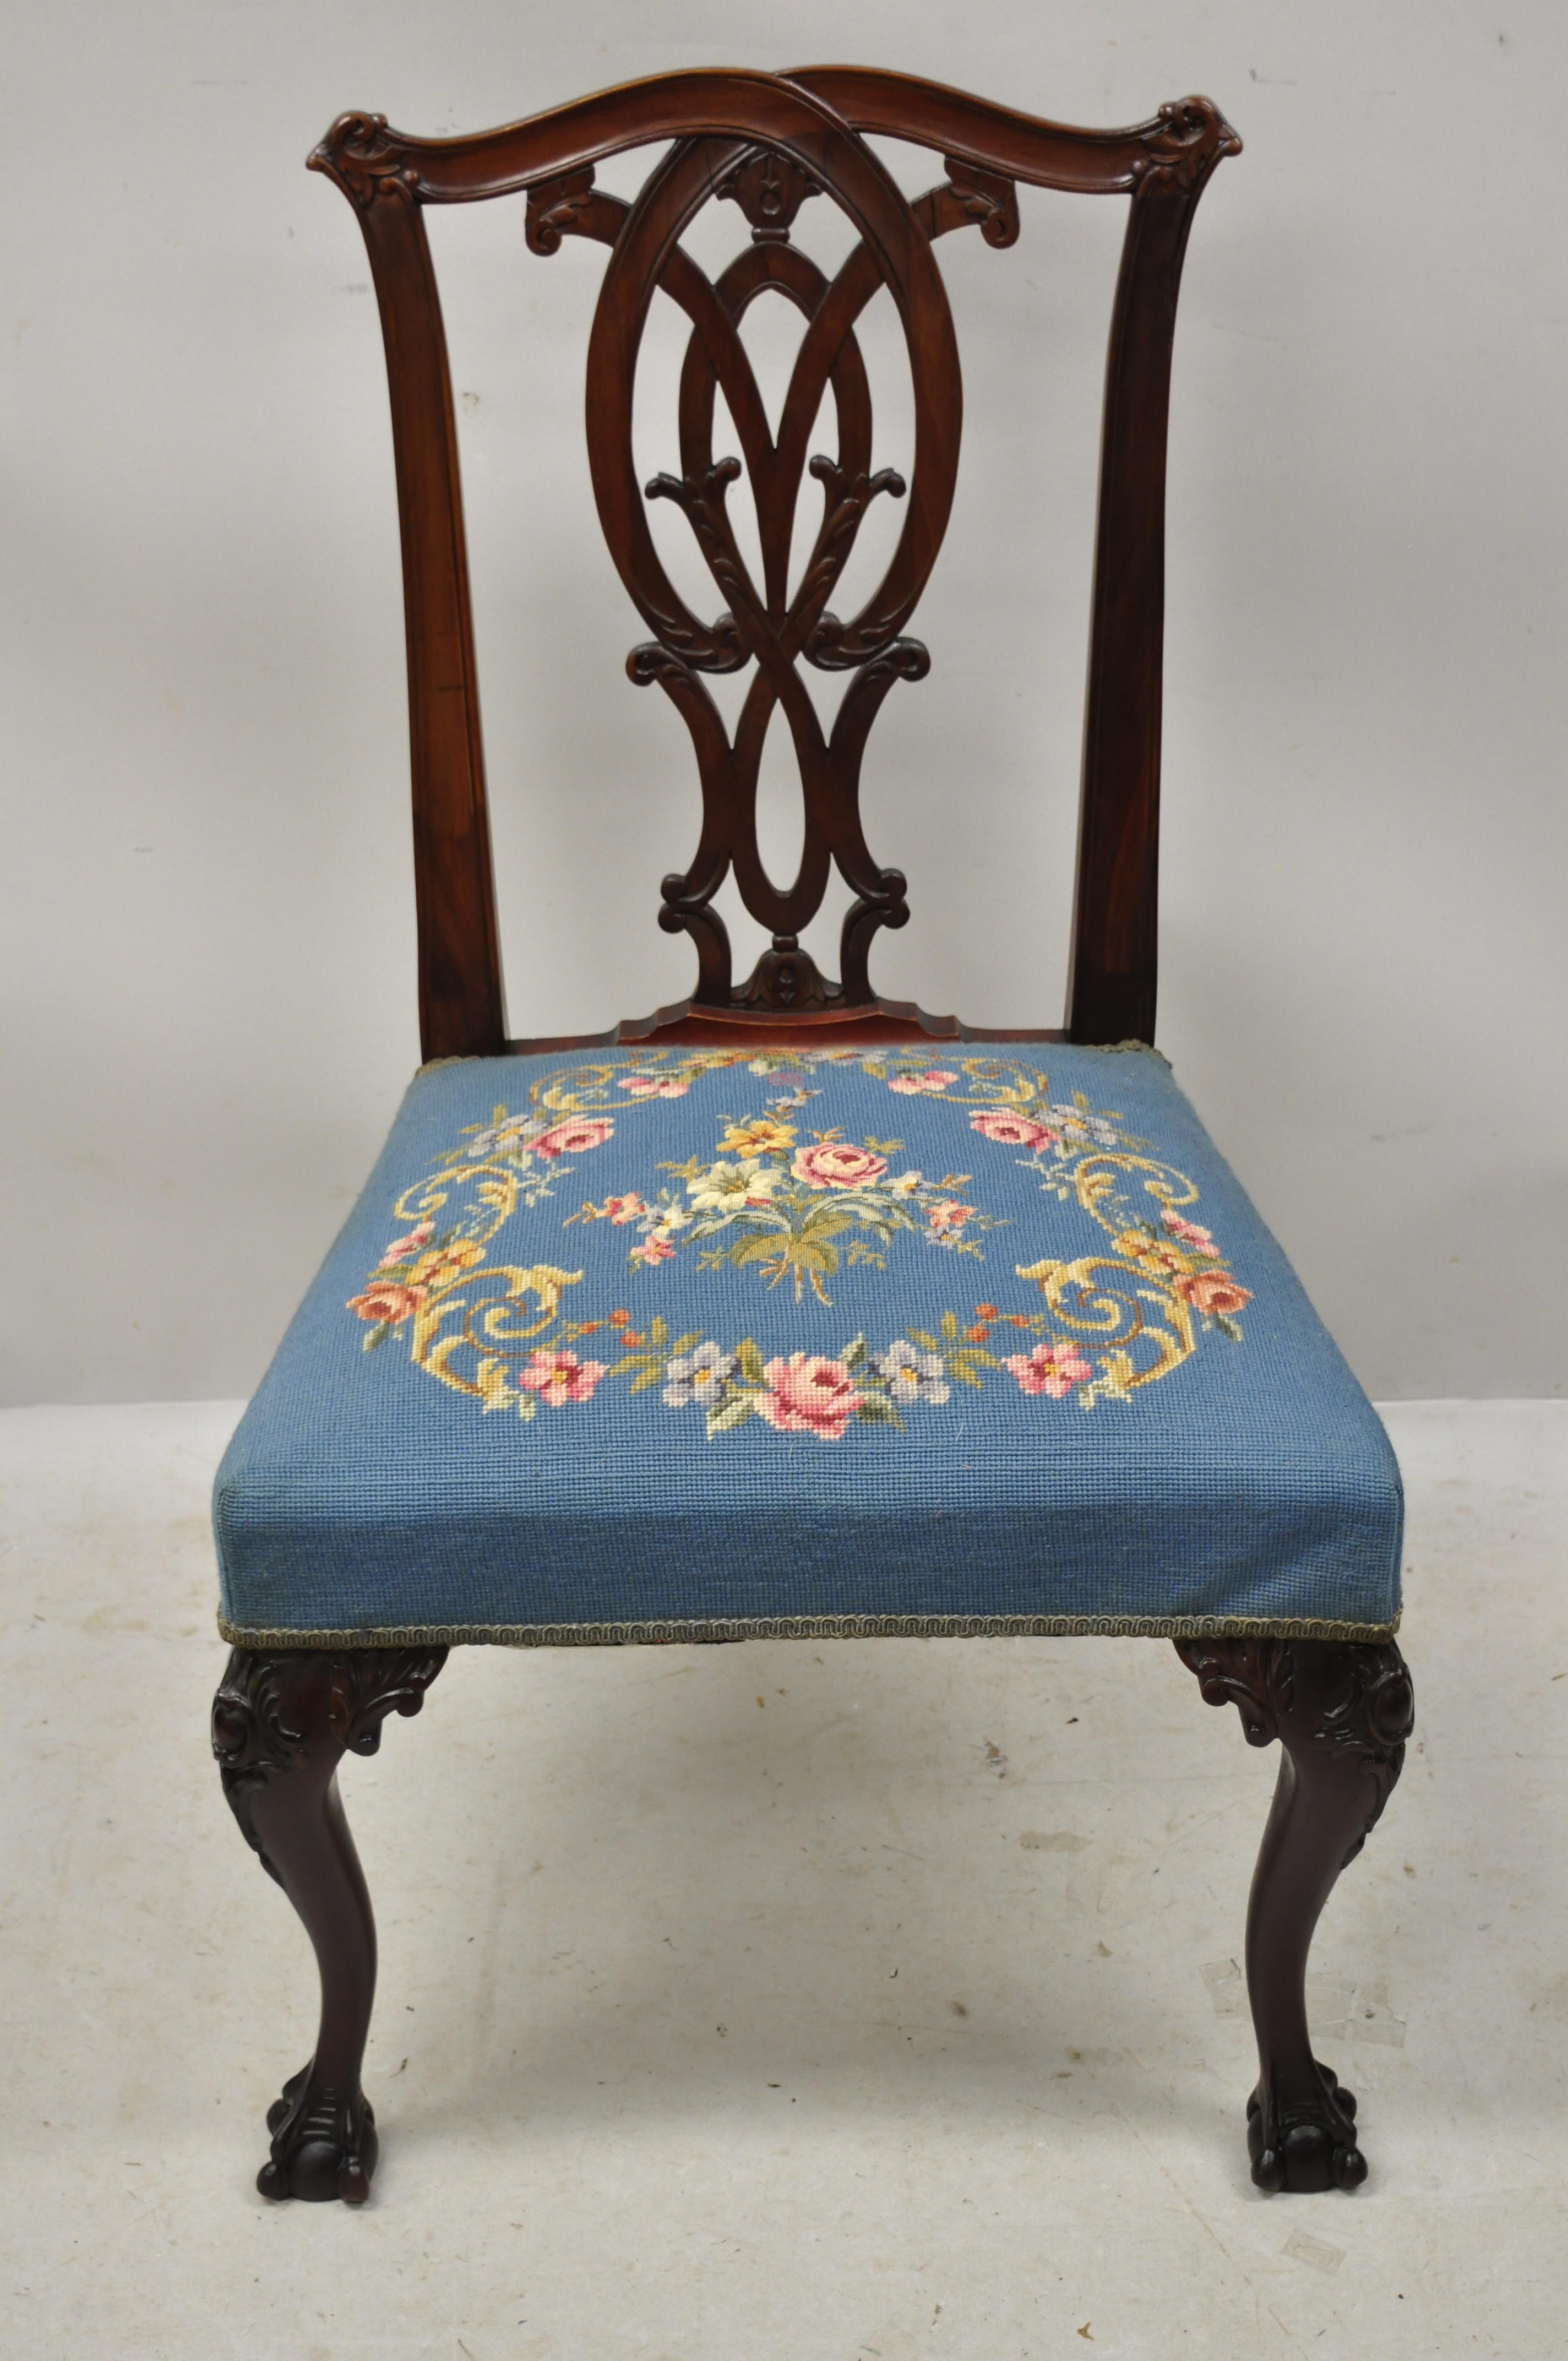 Ancienne chaise de salle à manger Chippendale en acajou, sculptée avec des boules et des griffes, assise en point de croix bleu. L'article présente une fleur en forme de cloche et un accent feuillu sculpté au dos, un siège floral en point de croix